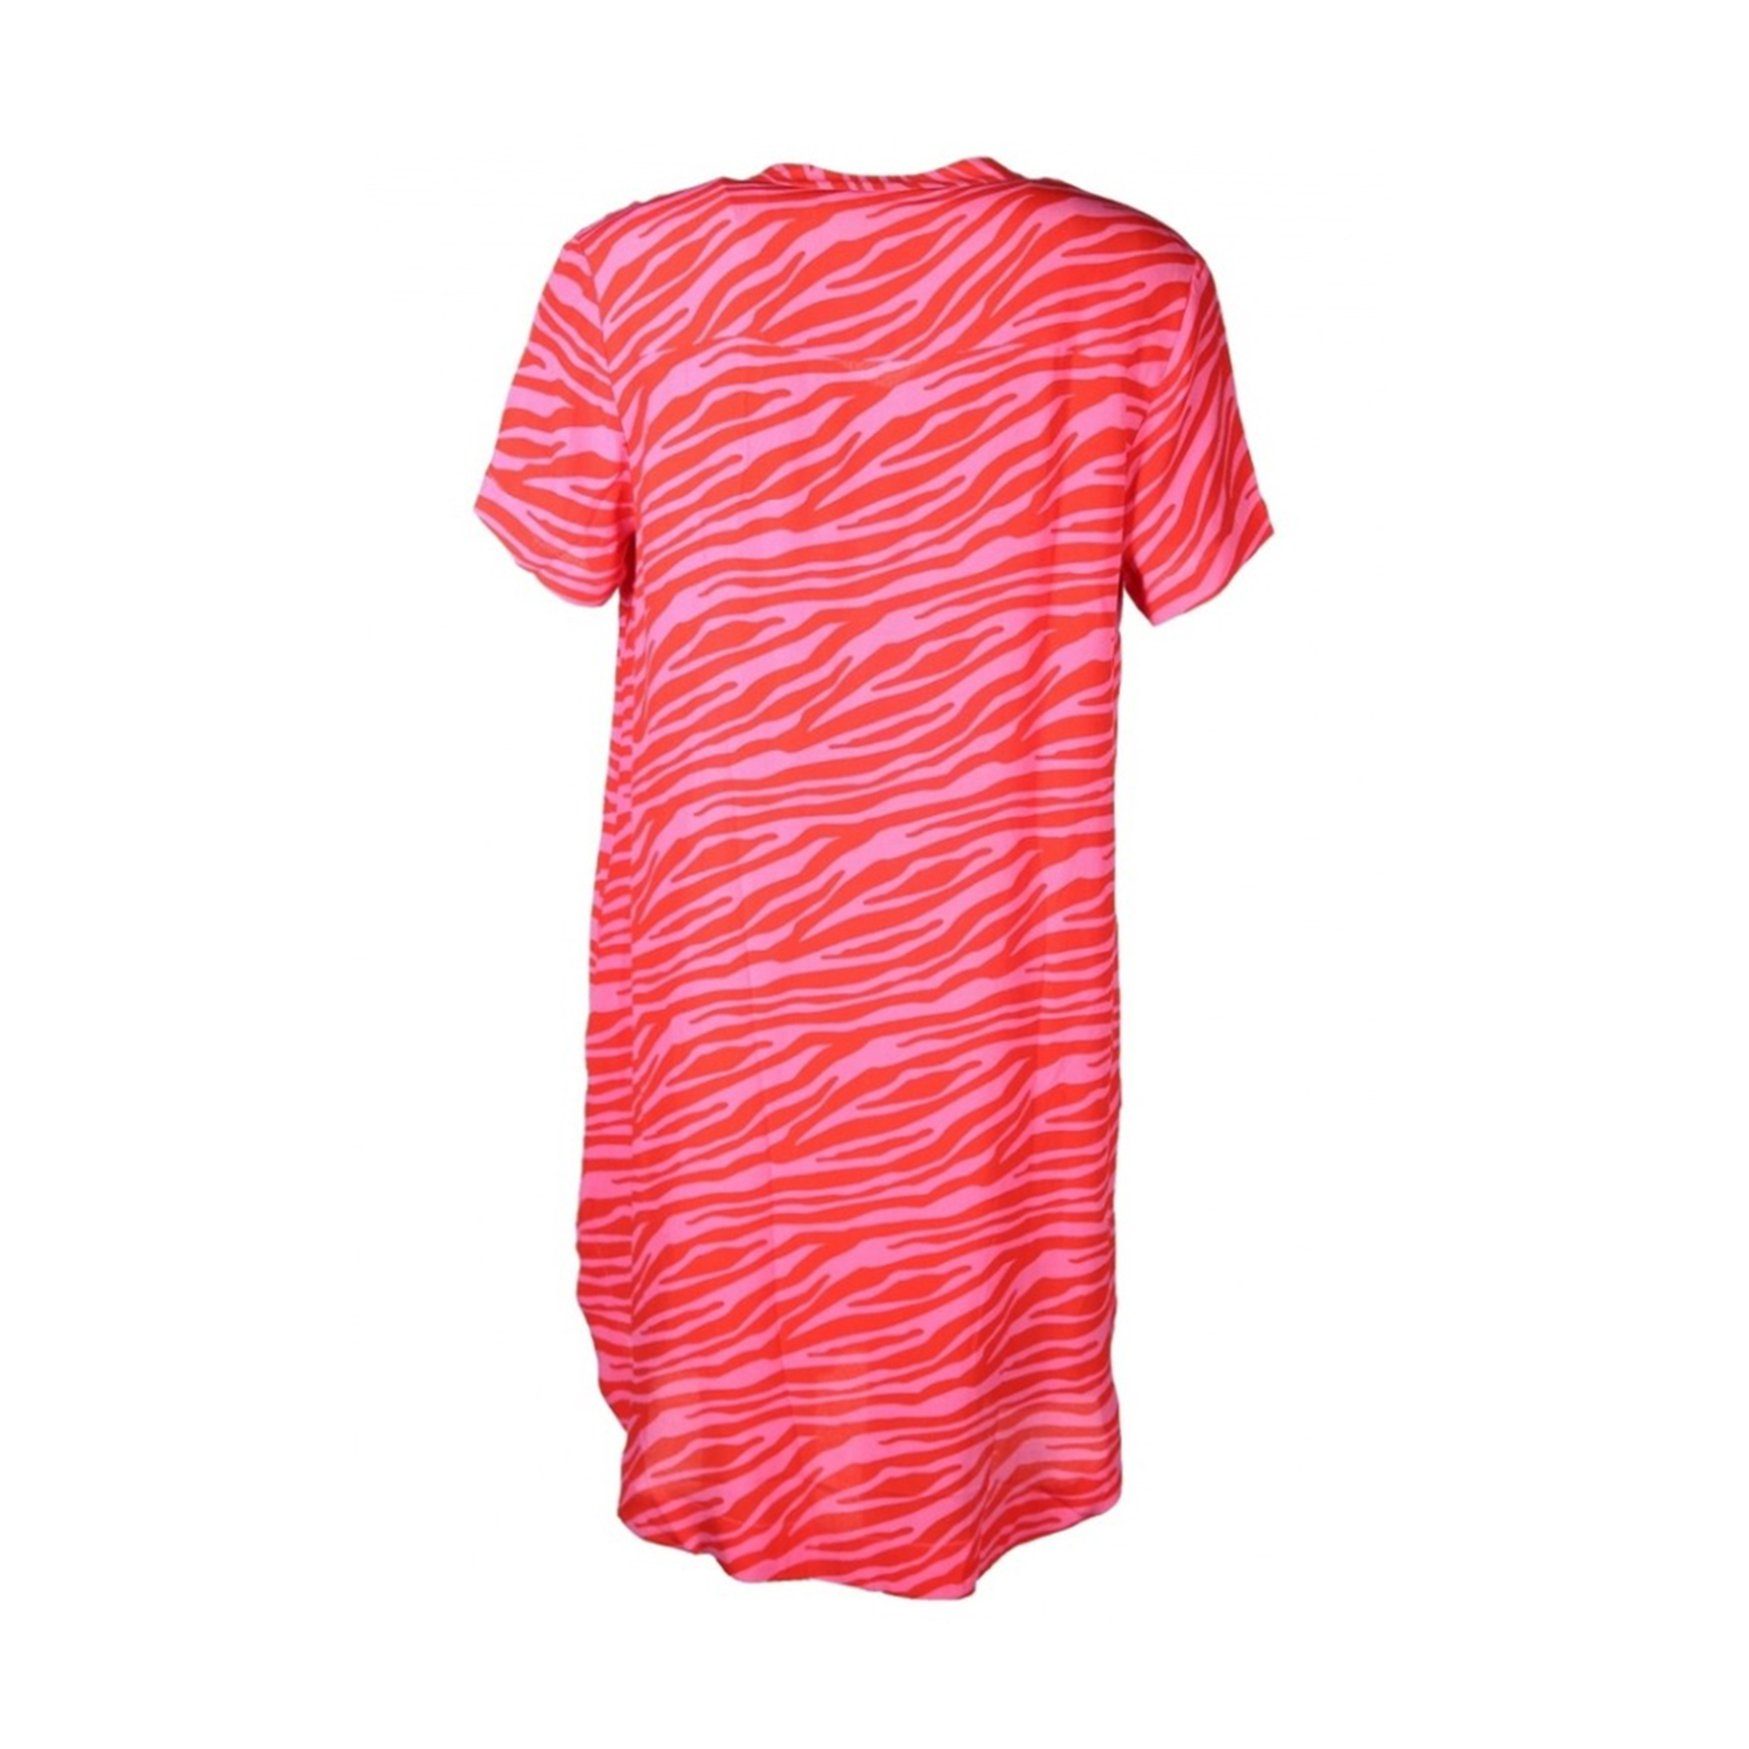 Damen Kleider Emily Van Den Bergh Tunikakleid red/pink Zebra Print